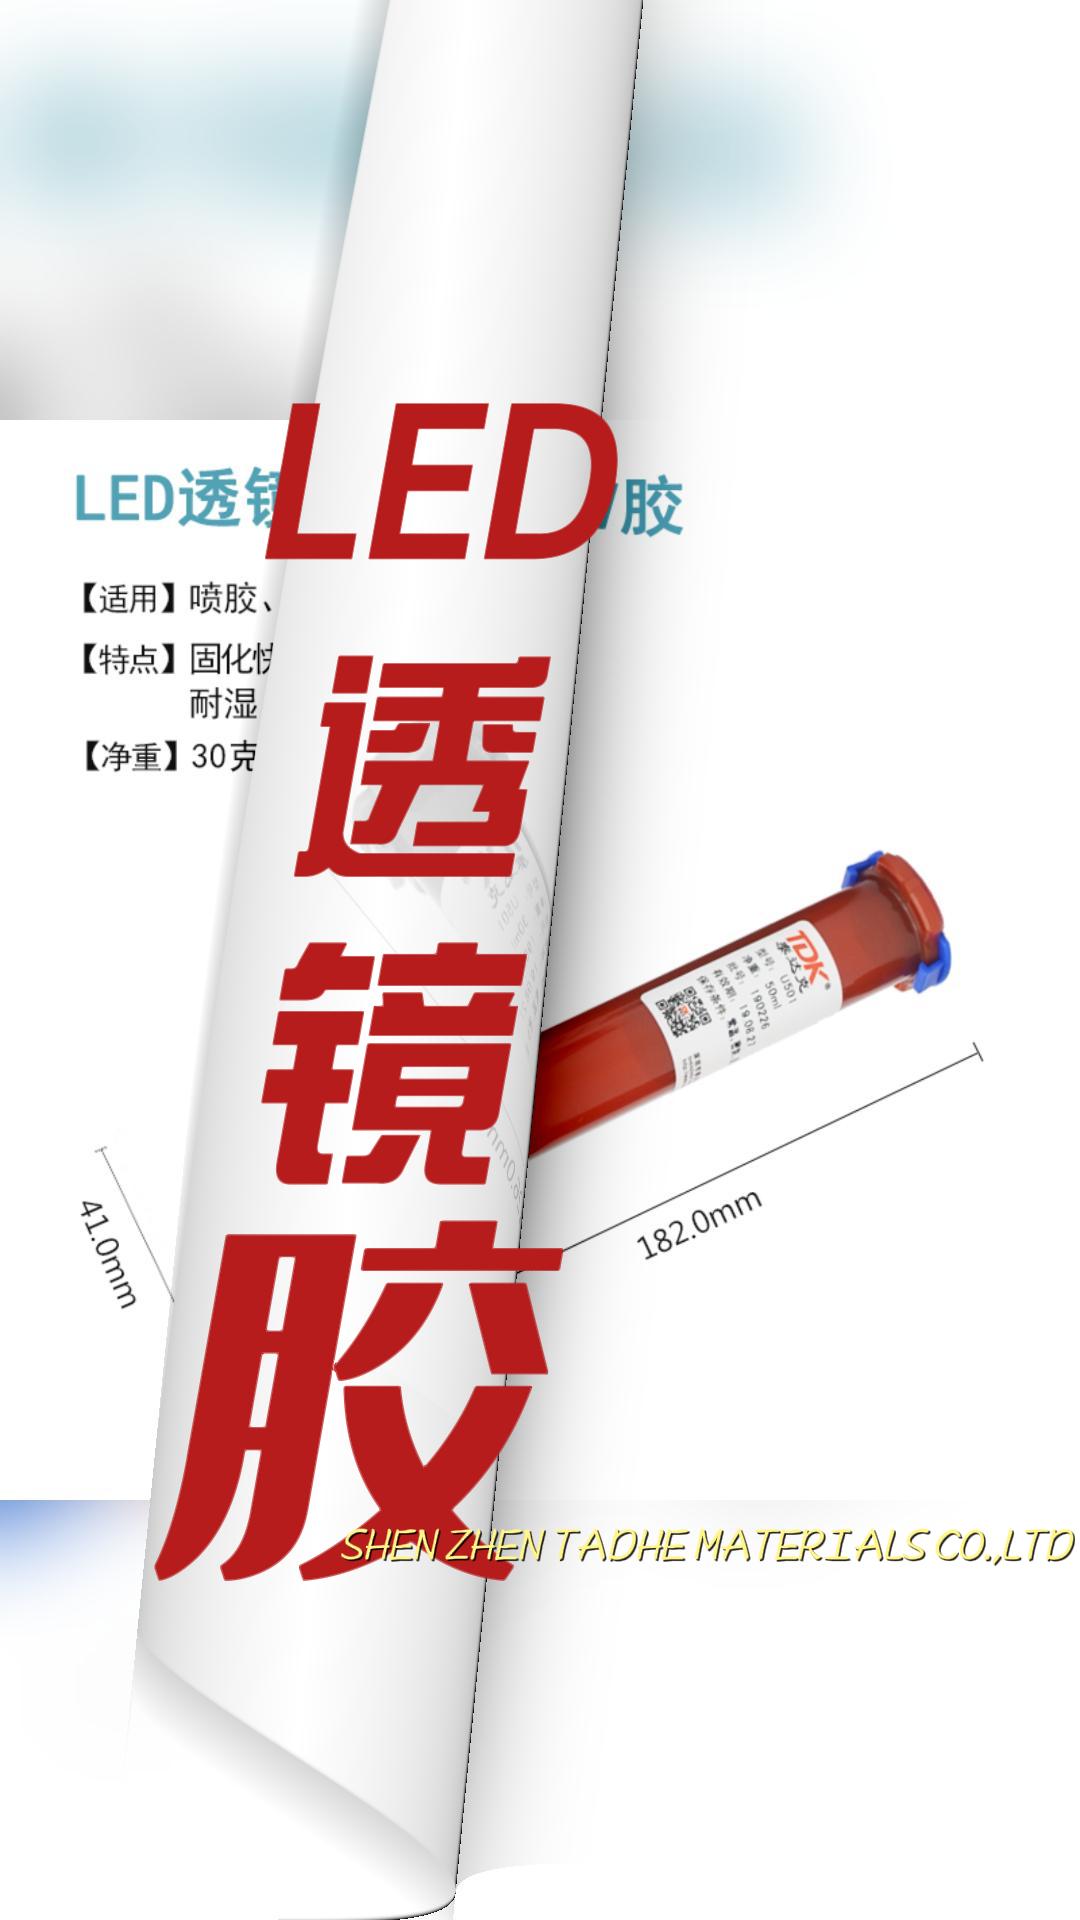 粘接固定LED透镜和铝基板用什么胶？LED透镜粘接UV胶来解决，用紫外光照射固化的胶粘剂。#led灯 